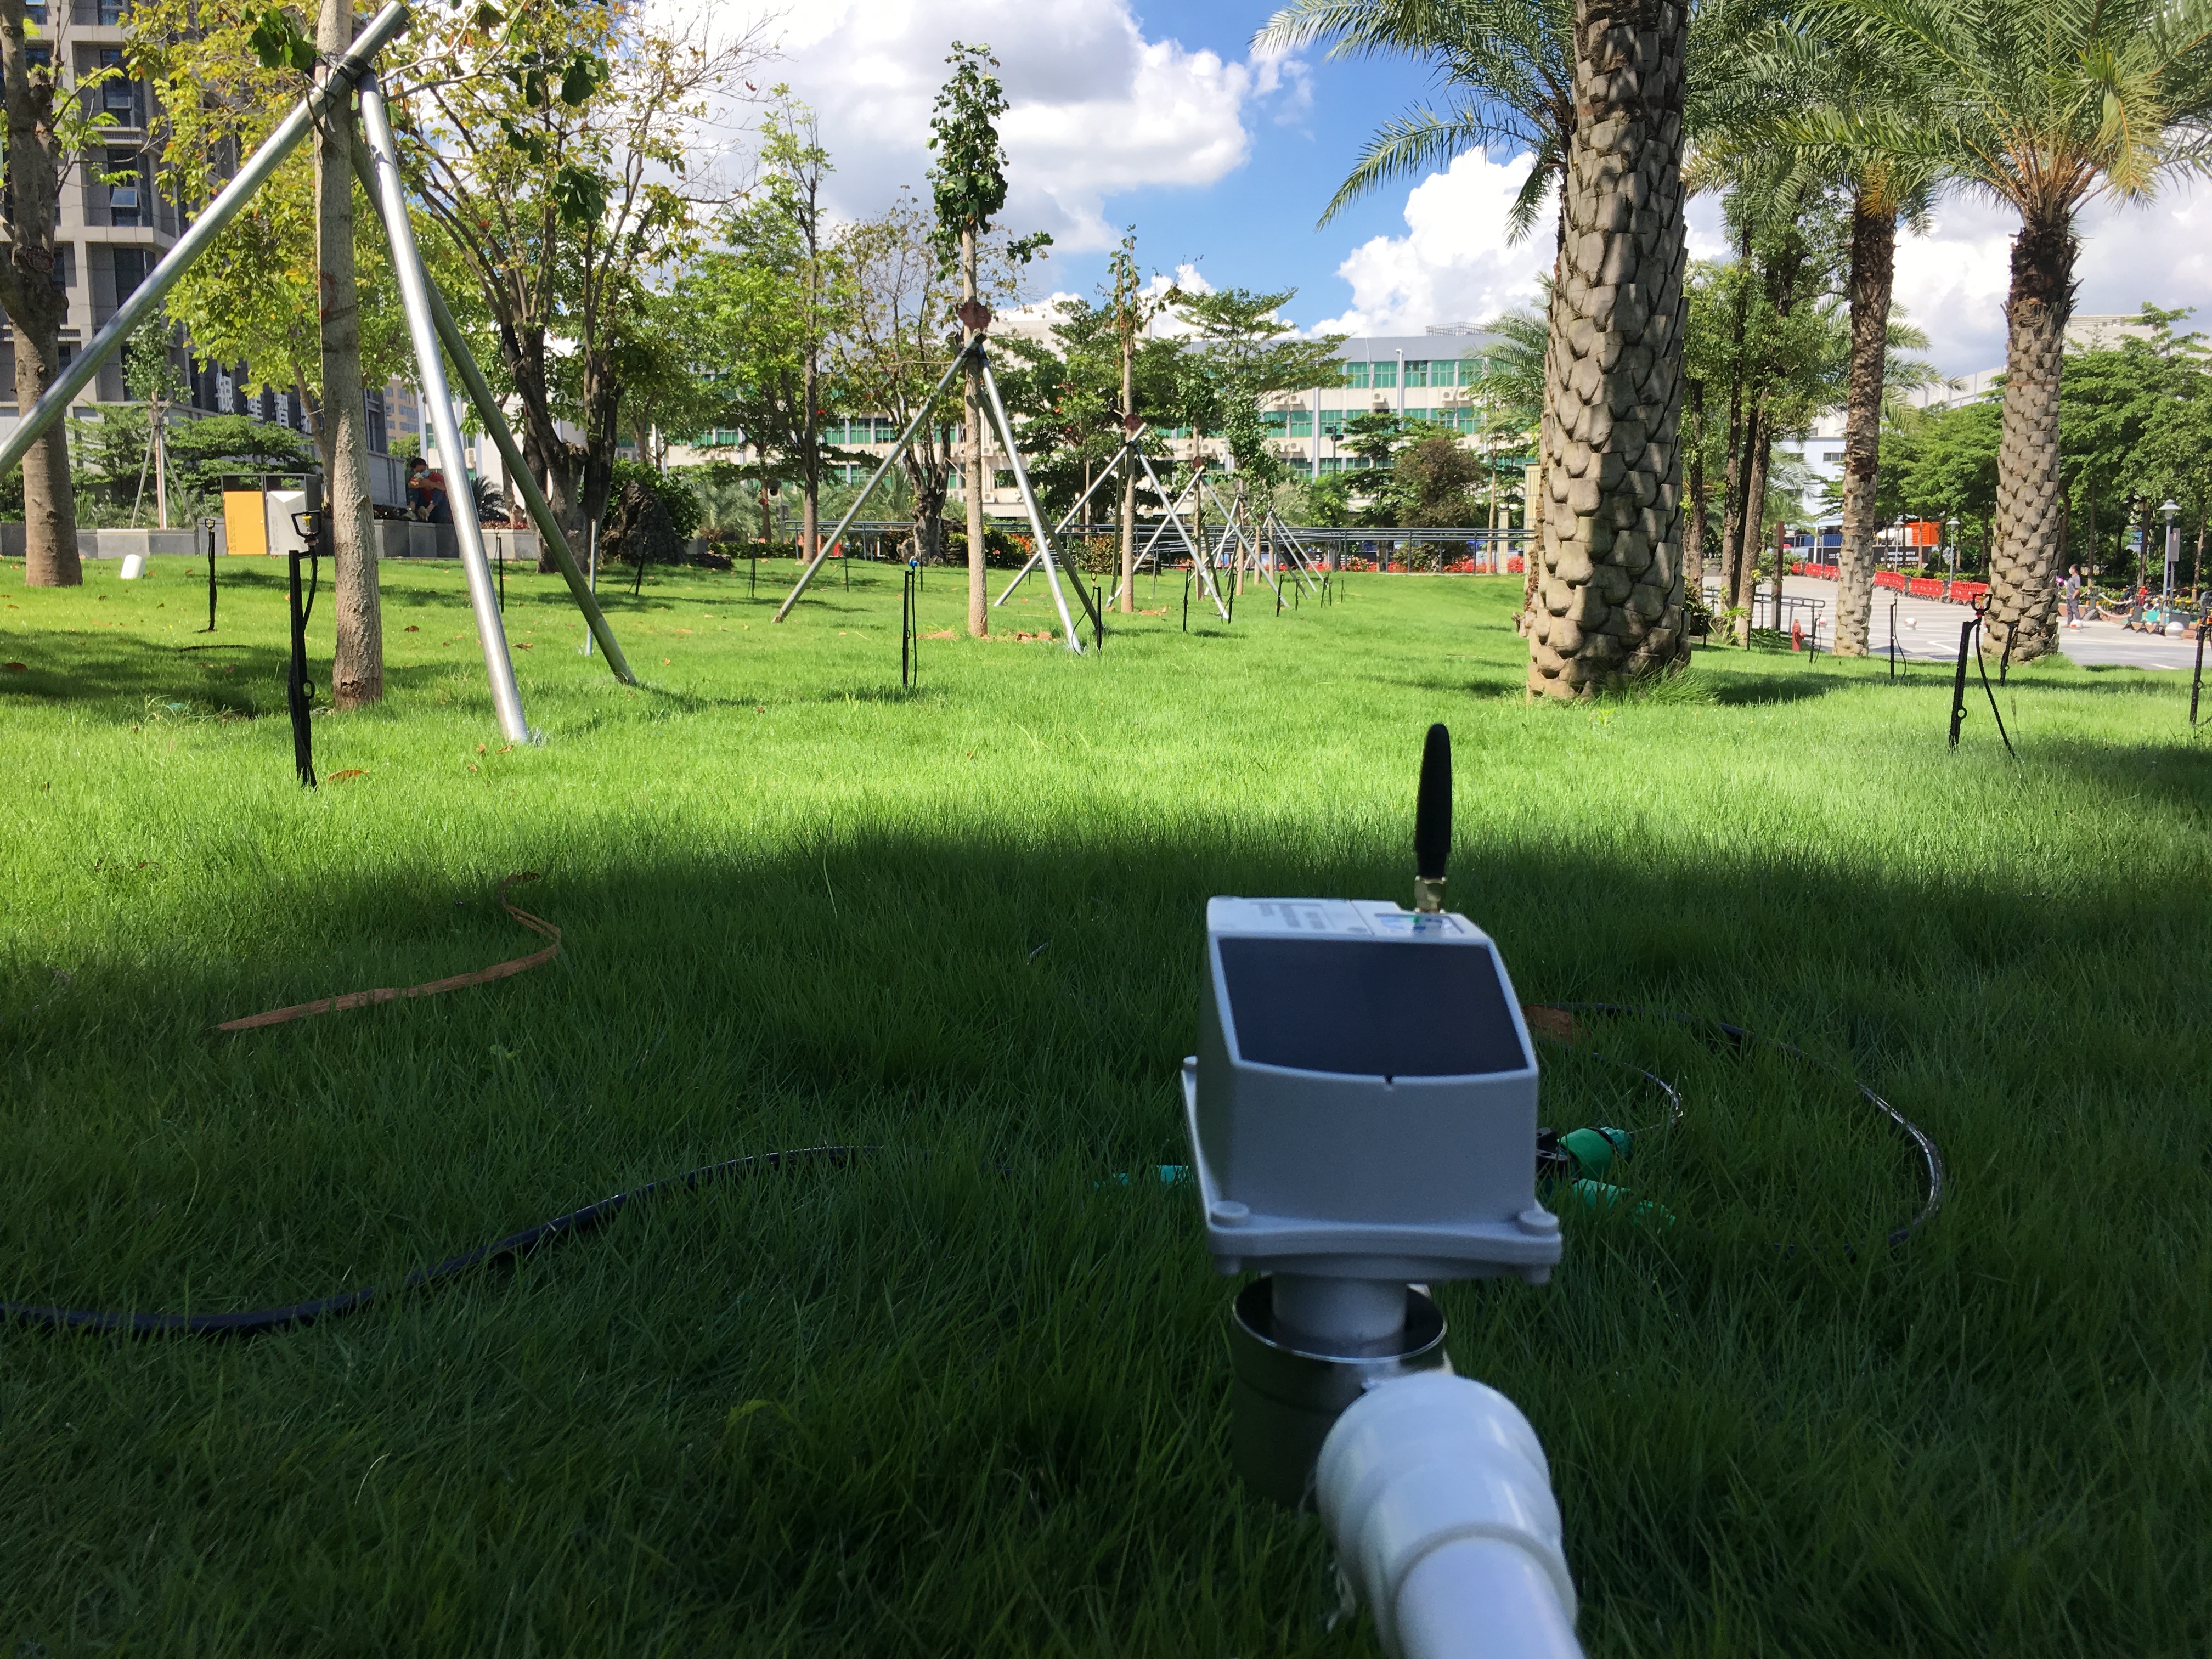 Temporizador de mangueira de jardim inteligente controlado por GSM com serviços de IoT totalmente gerenciados